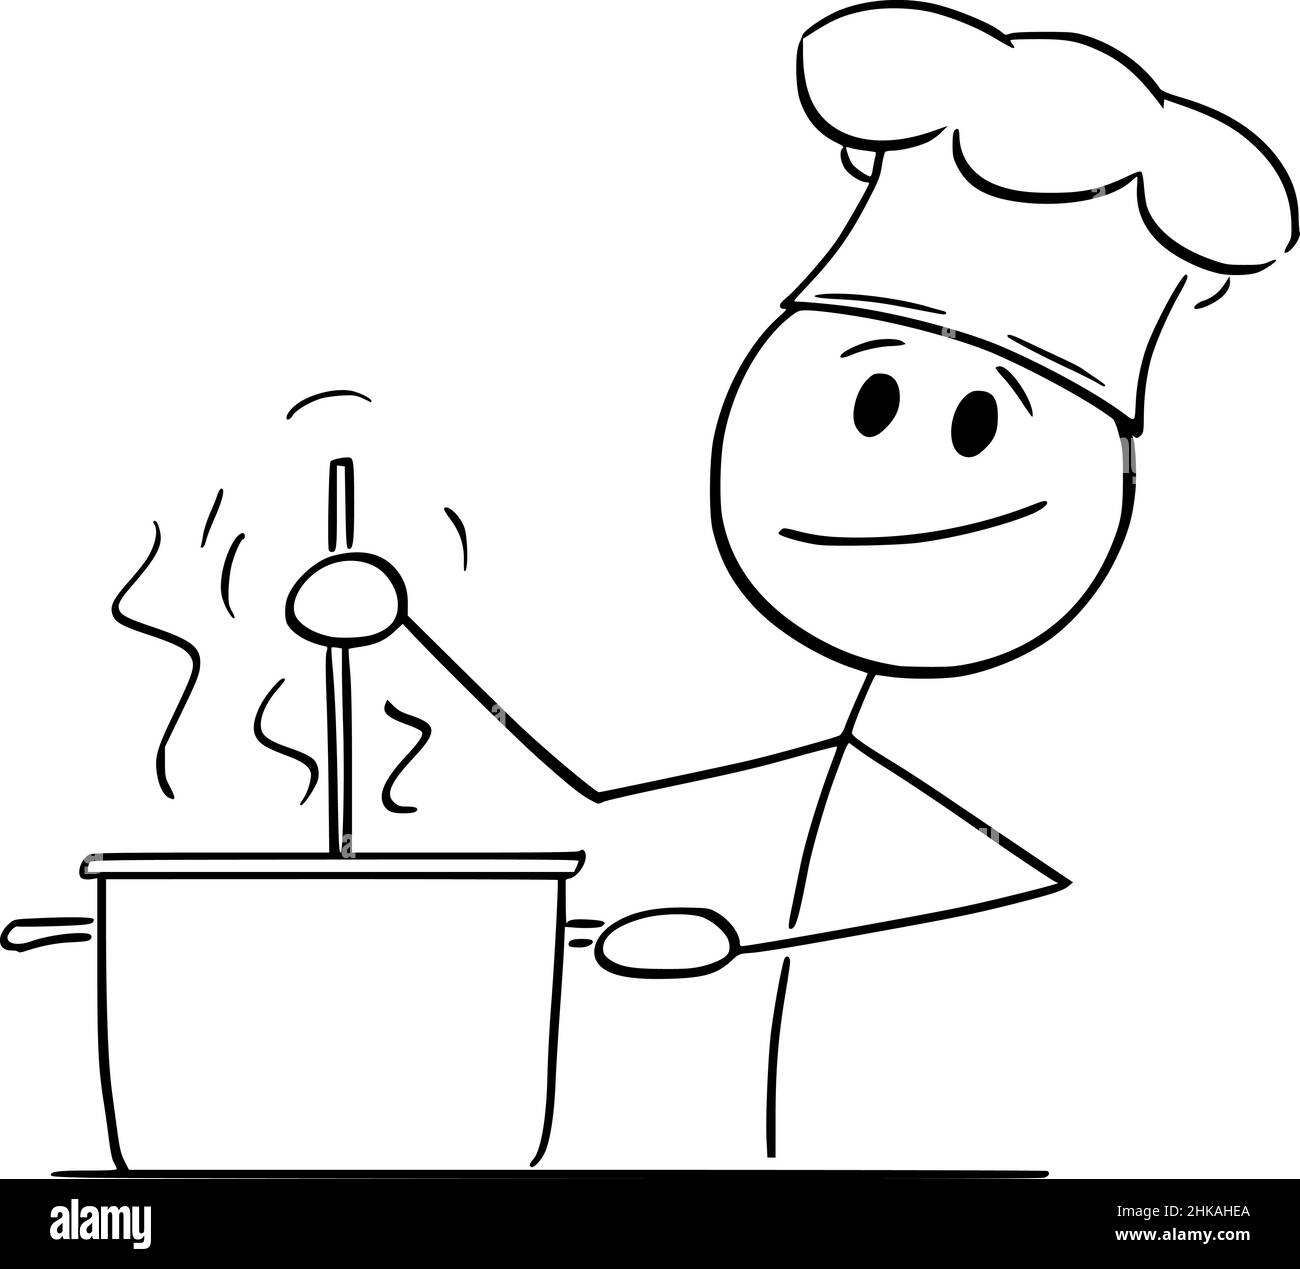 Küchenkanne Stock-Vektorgrafiken kaufen - Alamy